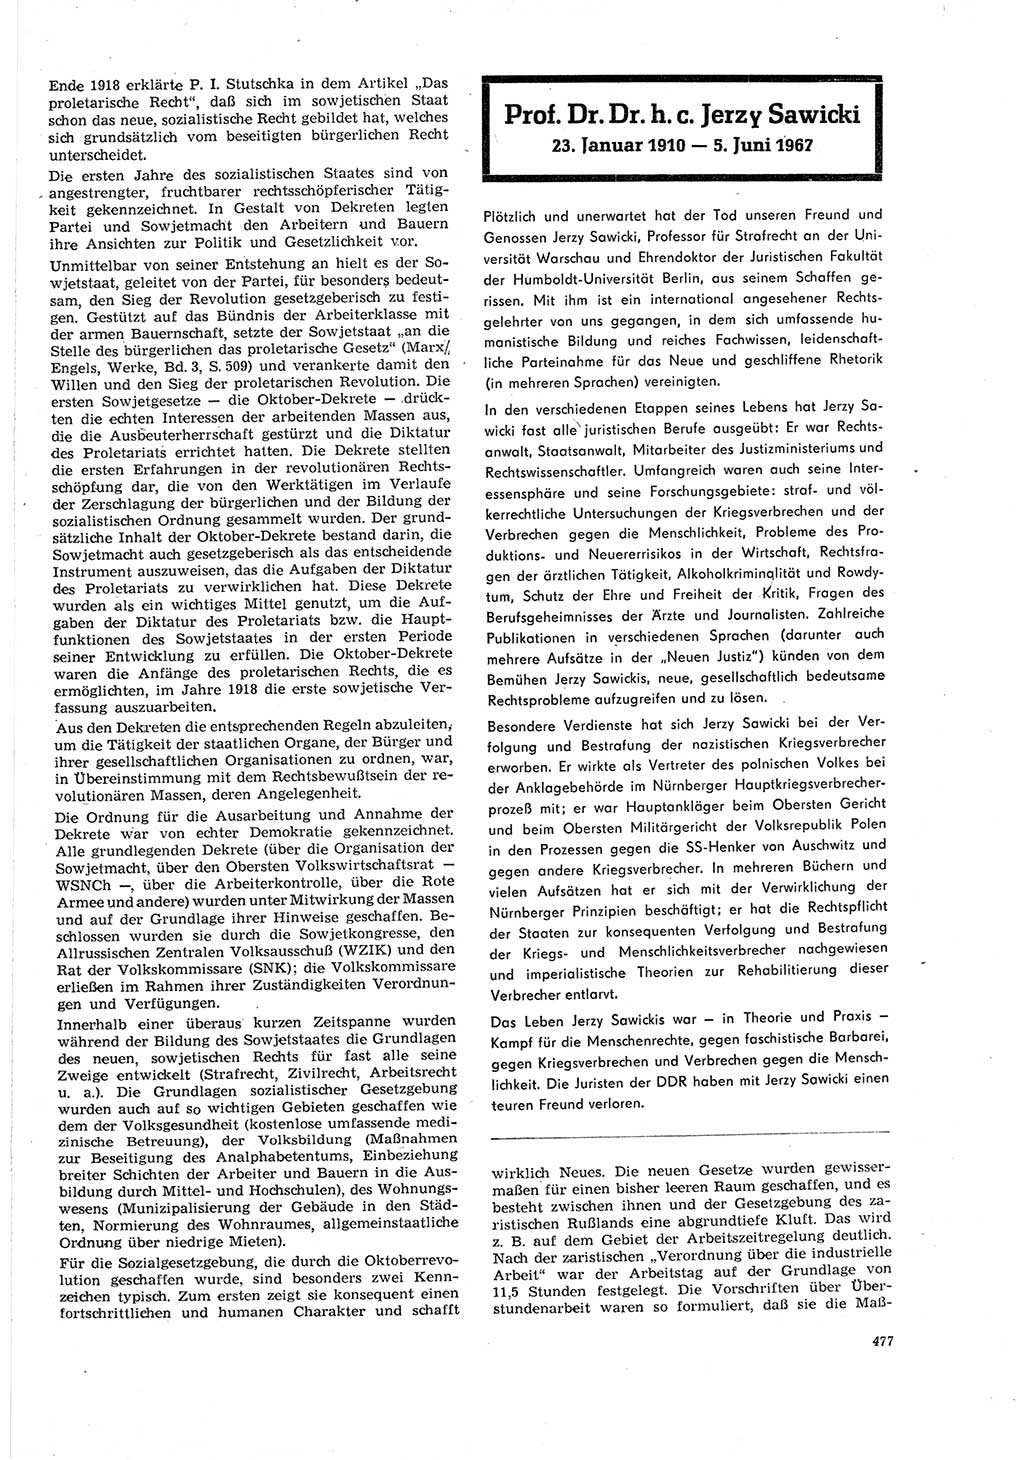 Neue Justiz (NJ), Zeitschrift für Recht und Rechtswissenschaft [Deutsche Demokratische Republik (DDR)], 21. Jahrgang 1967, Seite 477 (NJ DDR 1967, S. 477)